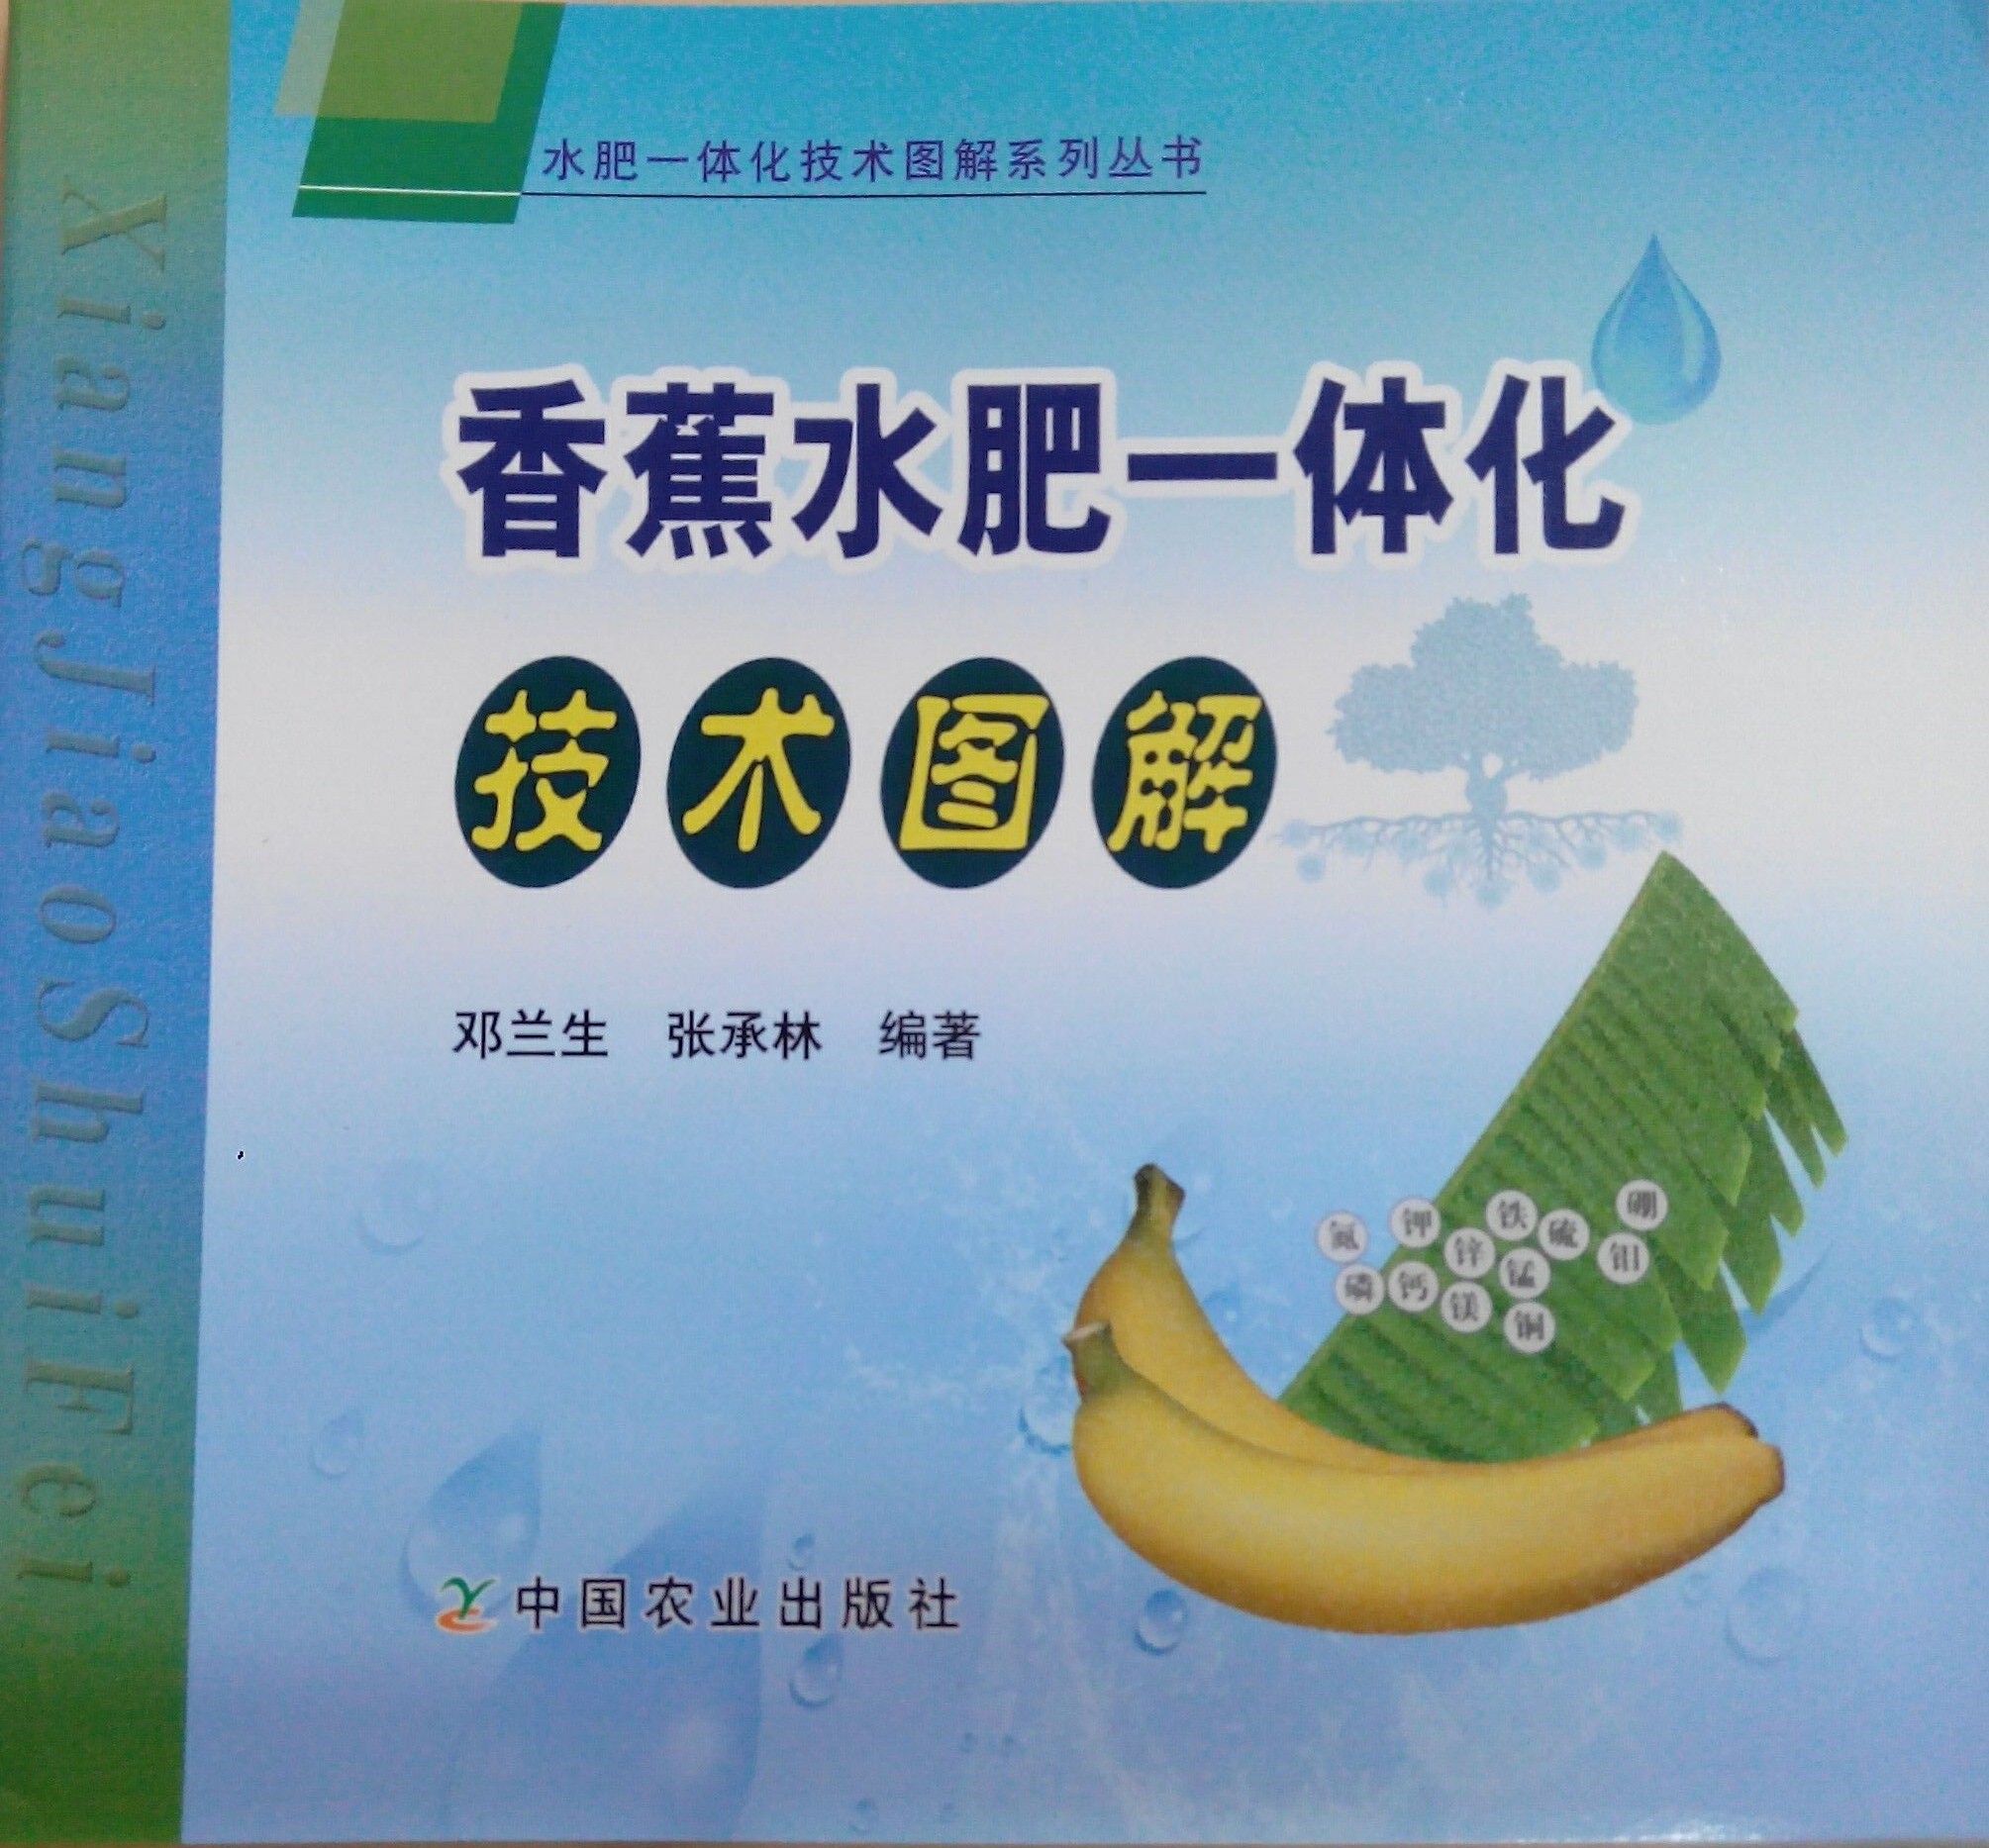 《香蕉水肥一体化技术图解》书籍推荐